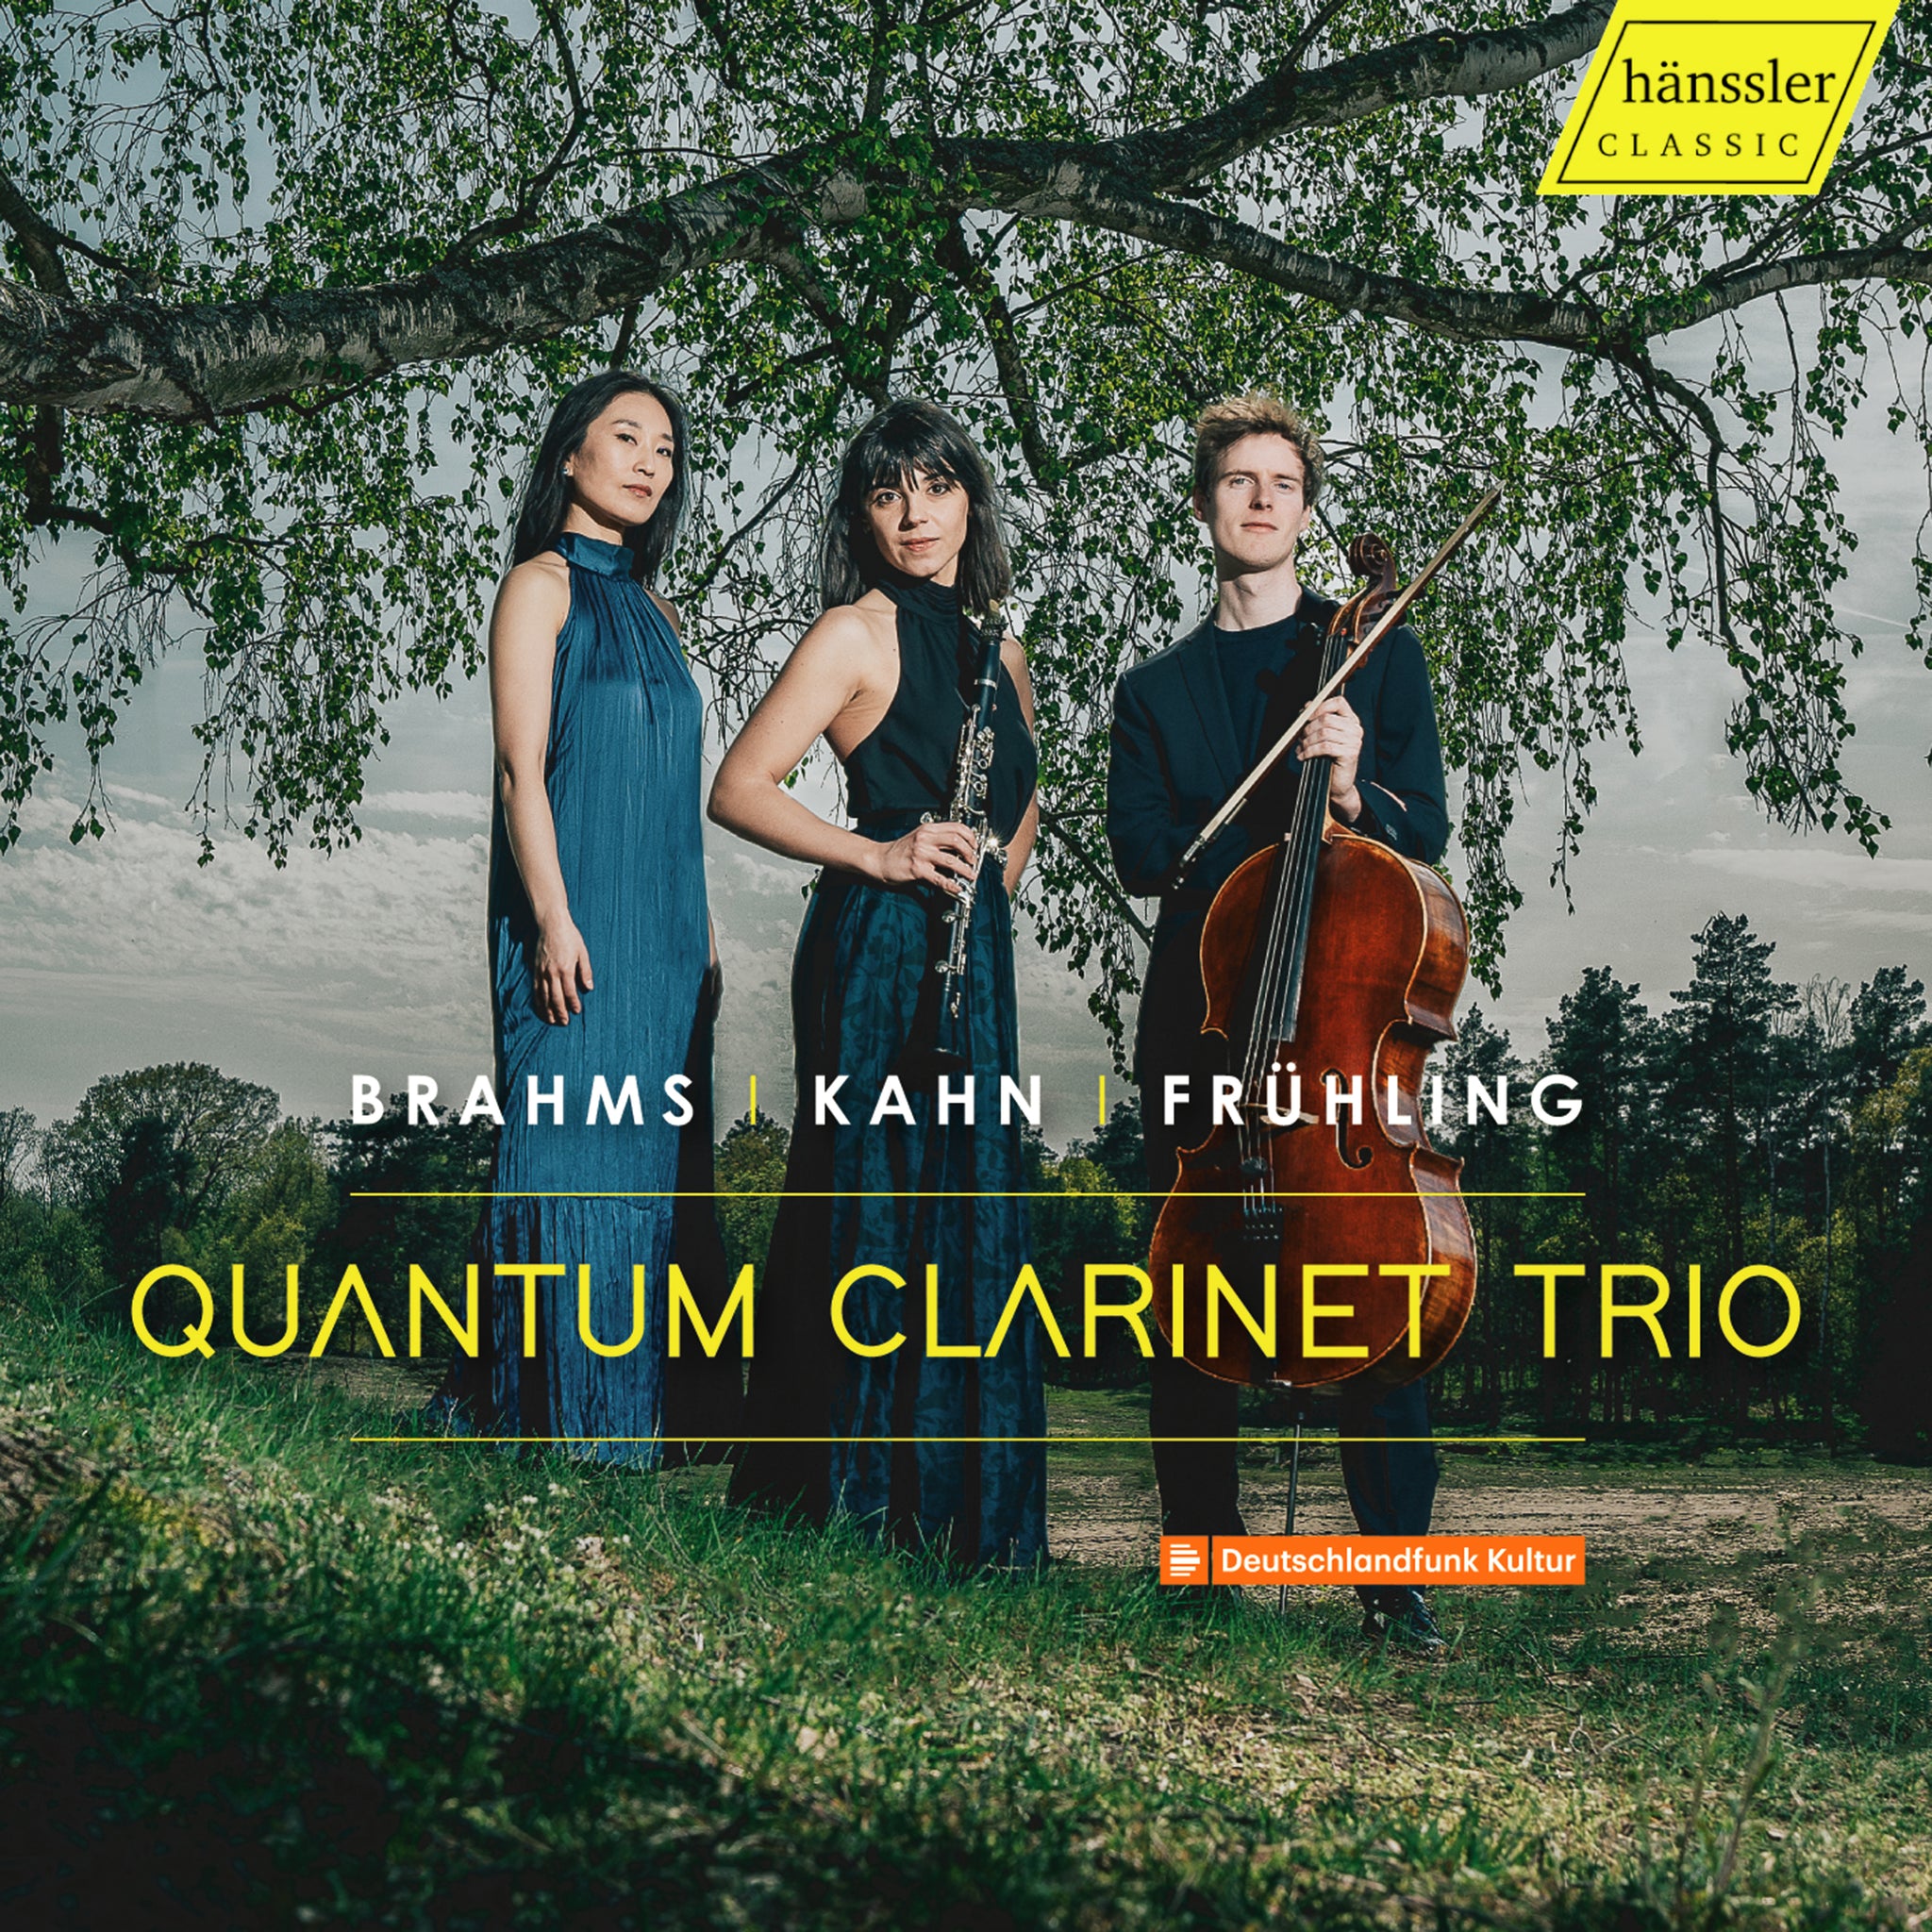 Brahms, Kahn & Frühling: Trios for Clarinet, Cello & Piano / Quantum Clarinet Trio